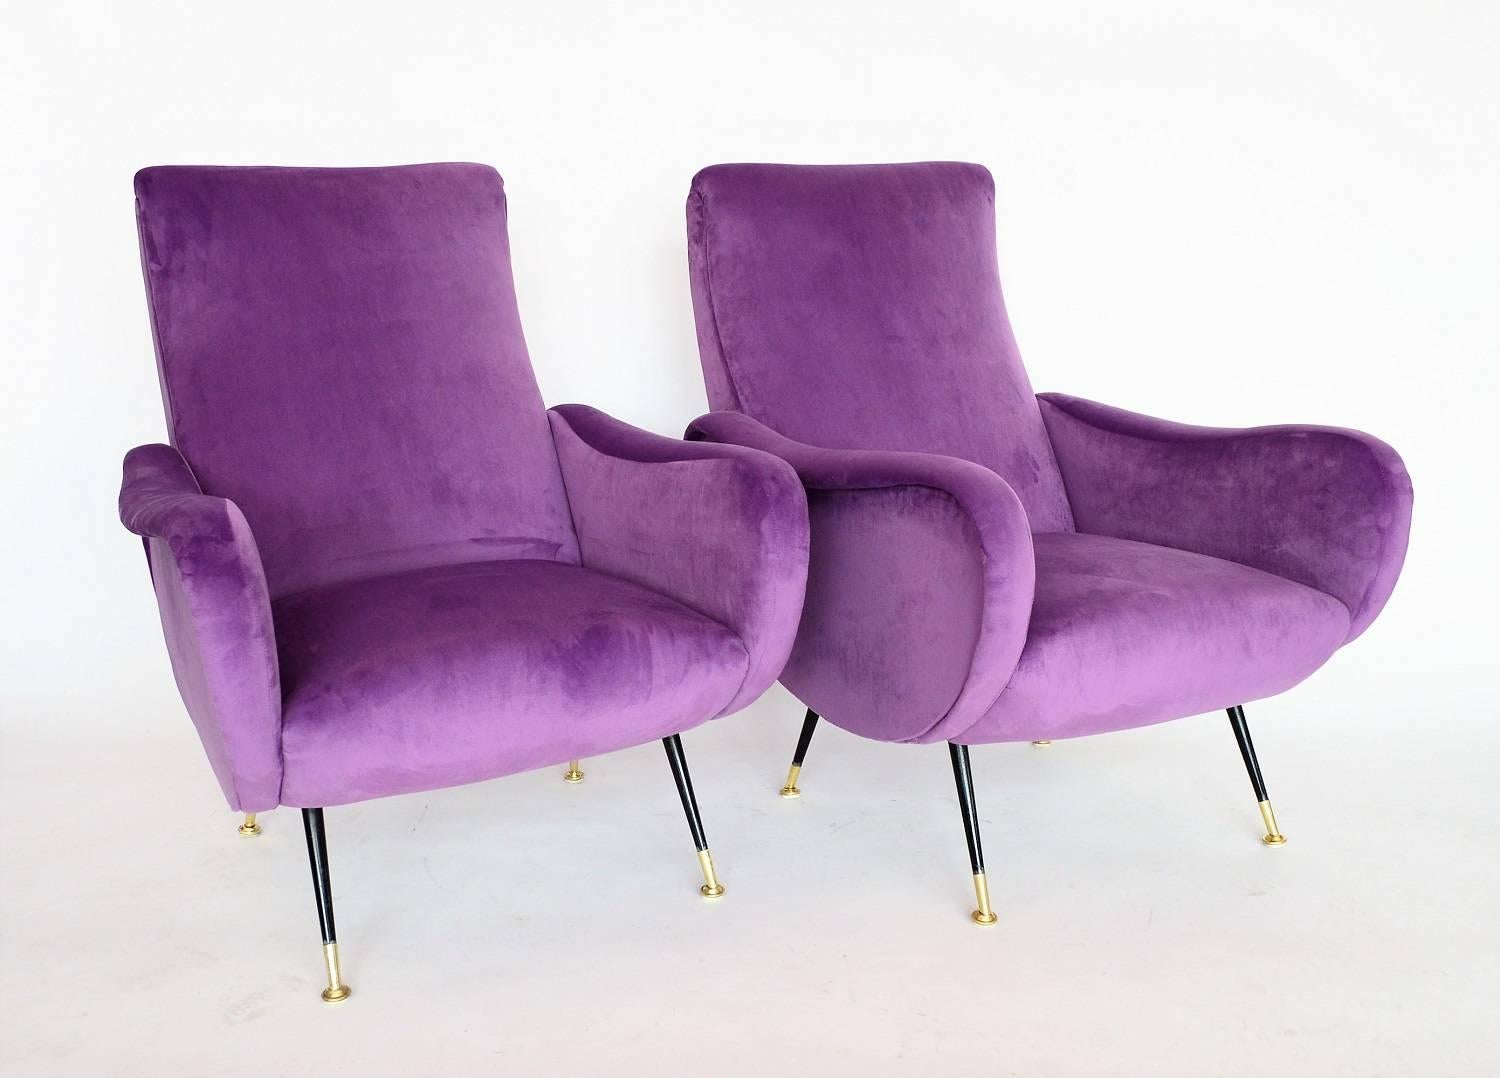 Mid-Century Modern Italian Armchairs Restored with Light Purple Velvet, 1950s